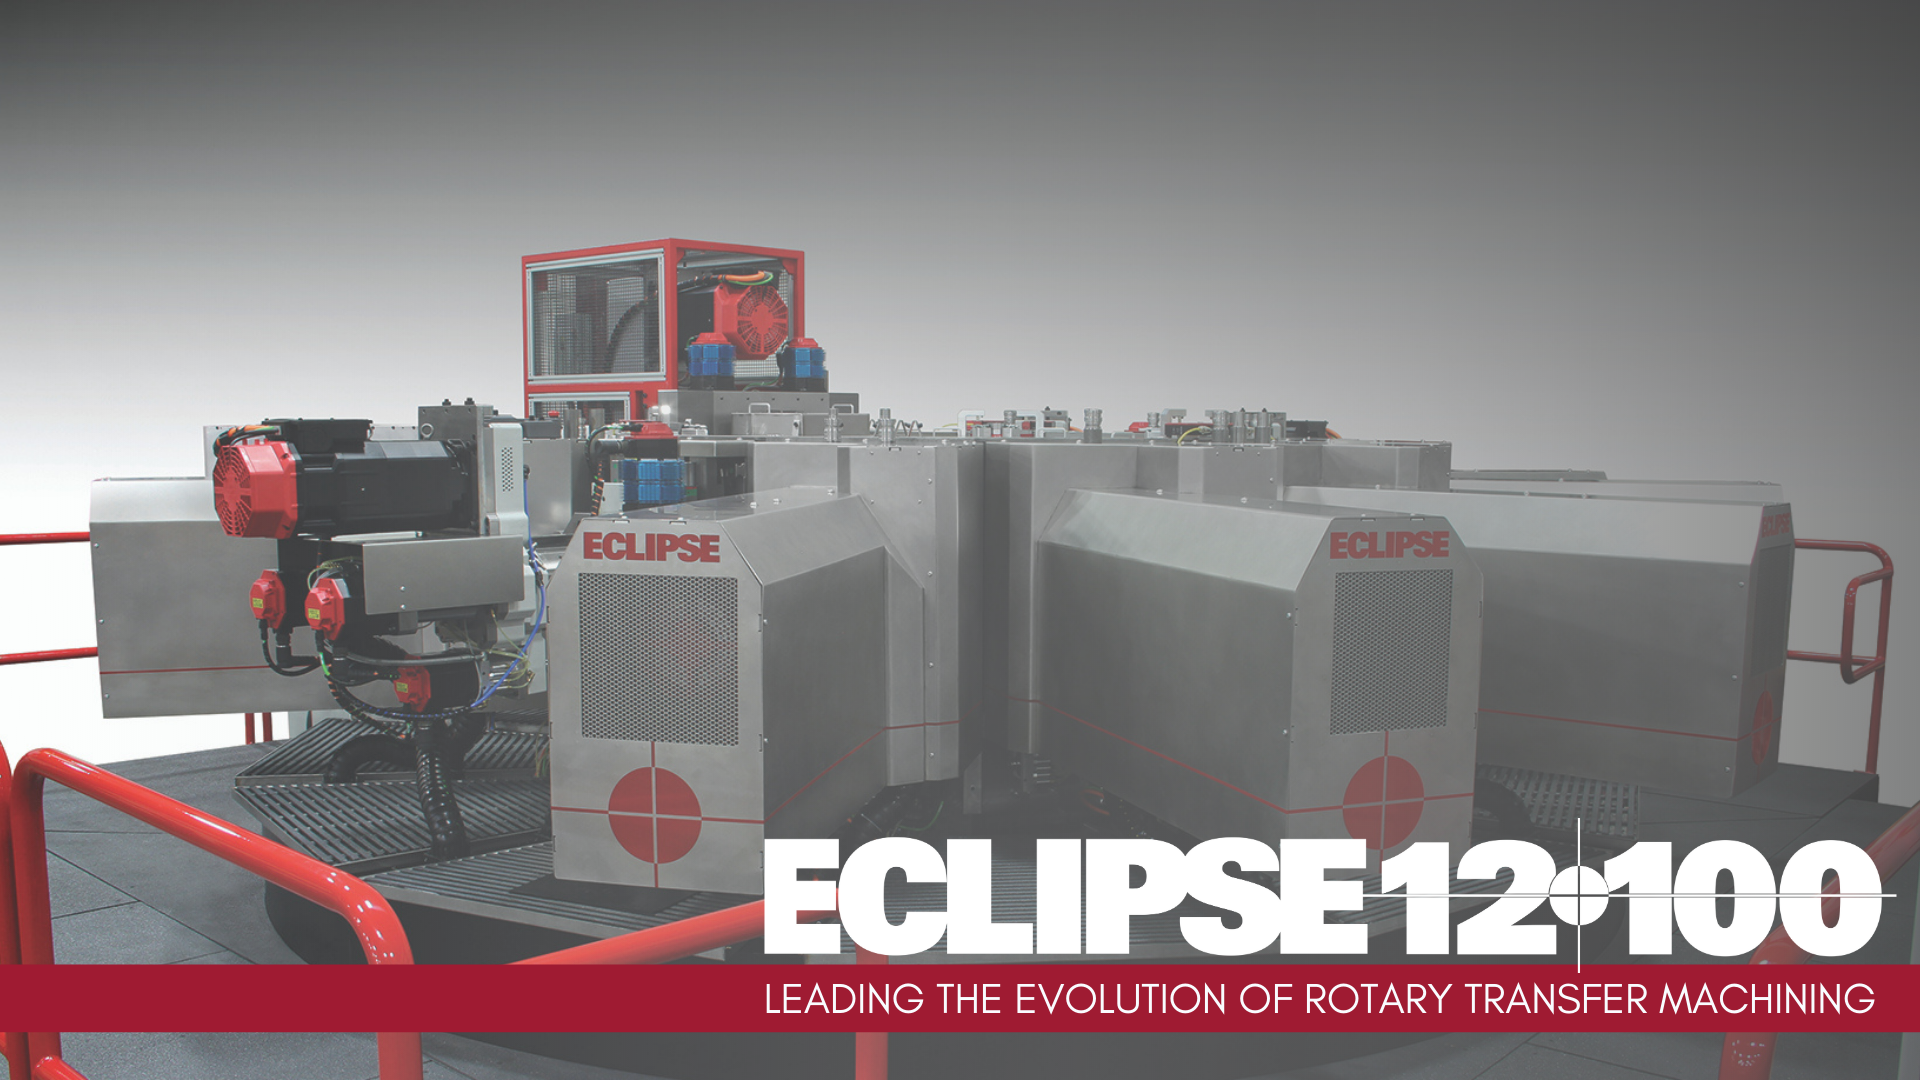 Eclipse 12-100